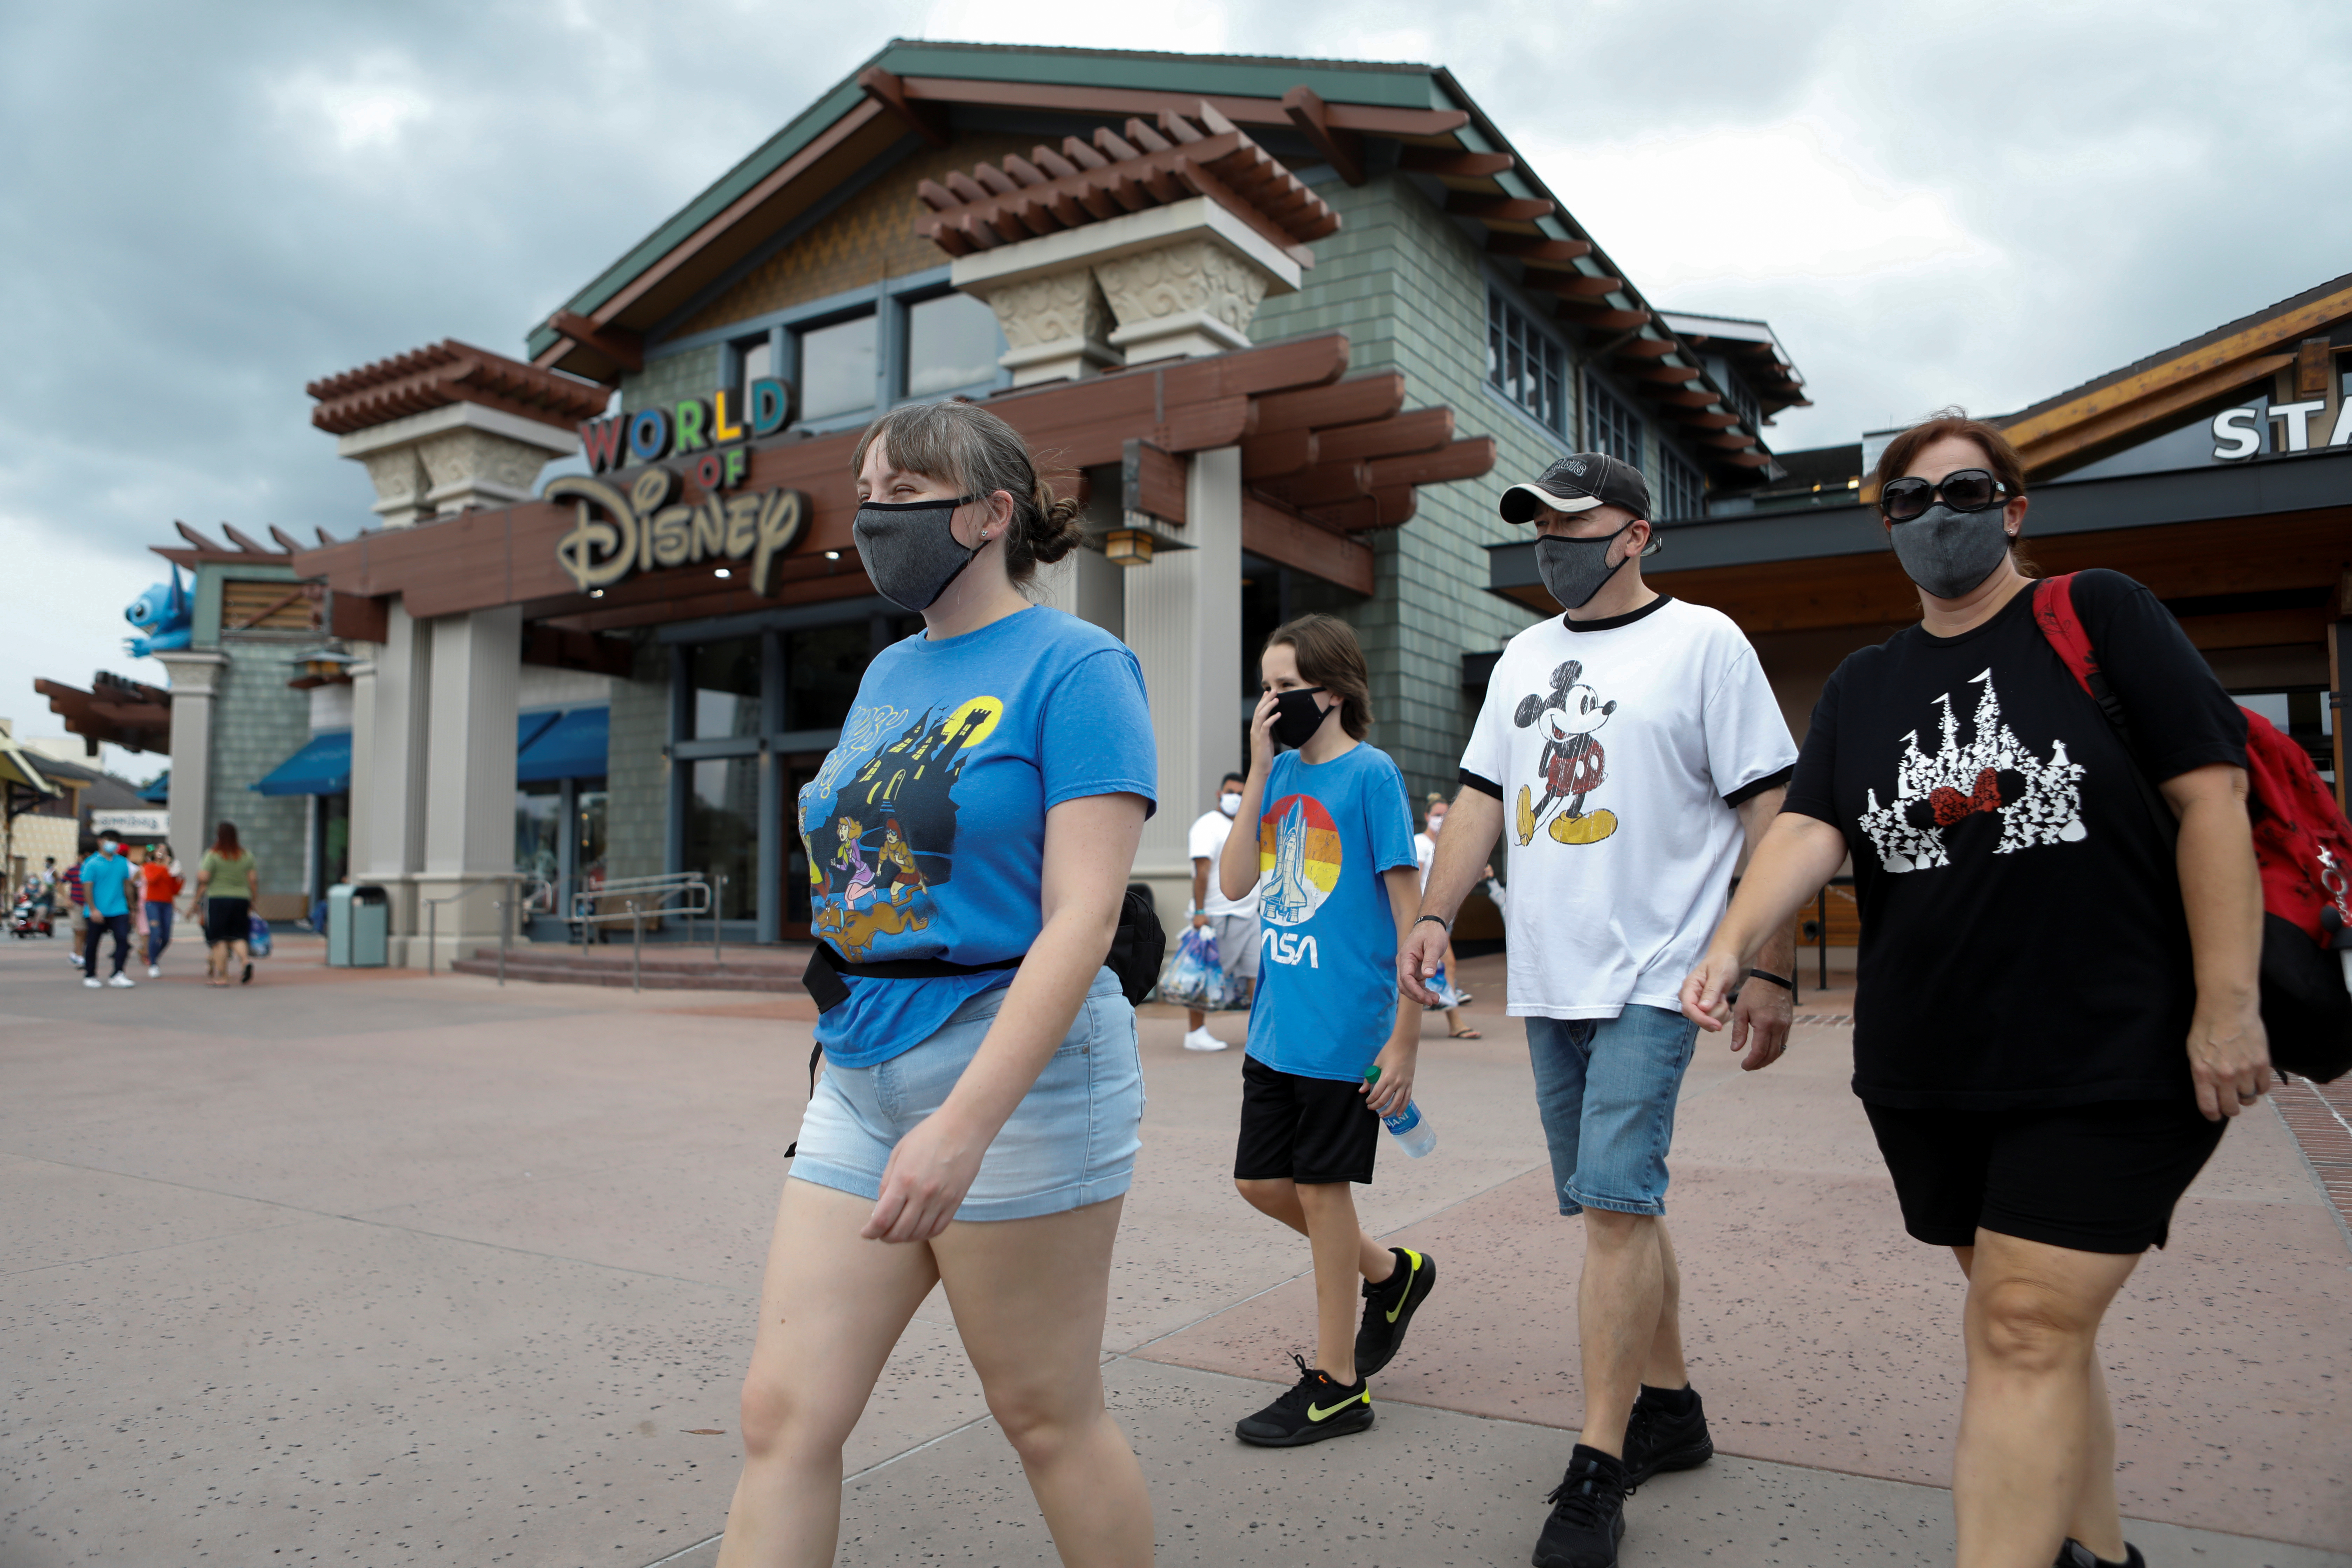 Una familia pasea en Disney World en la reapertura del parque de diversiones, en Florida (Reuters)